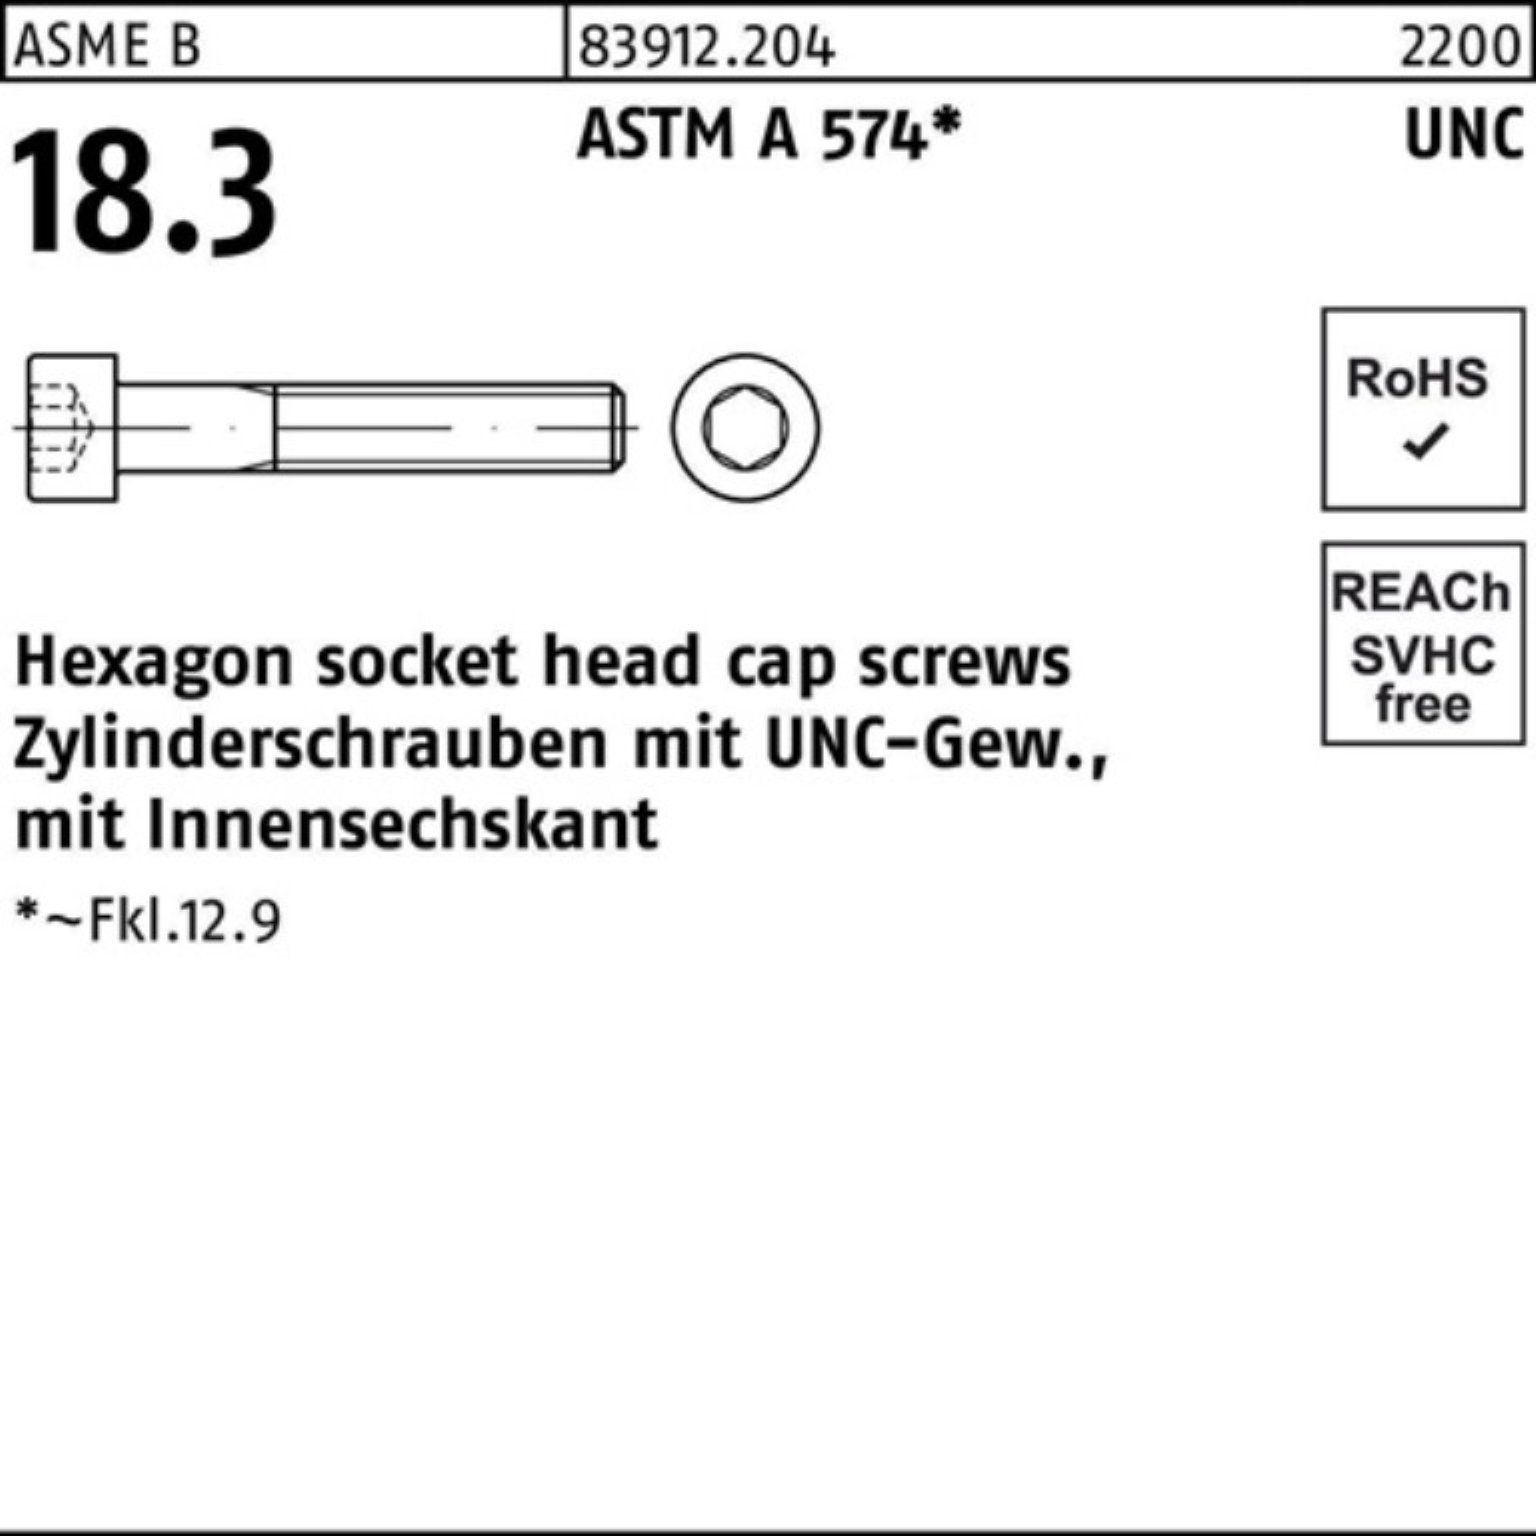 Pack Zylinderschraube 1/2 AST 200er UNC-Gewinde/Innen-6kt 83912 Reyher #10x R Zylinderschraube